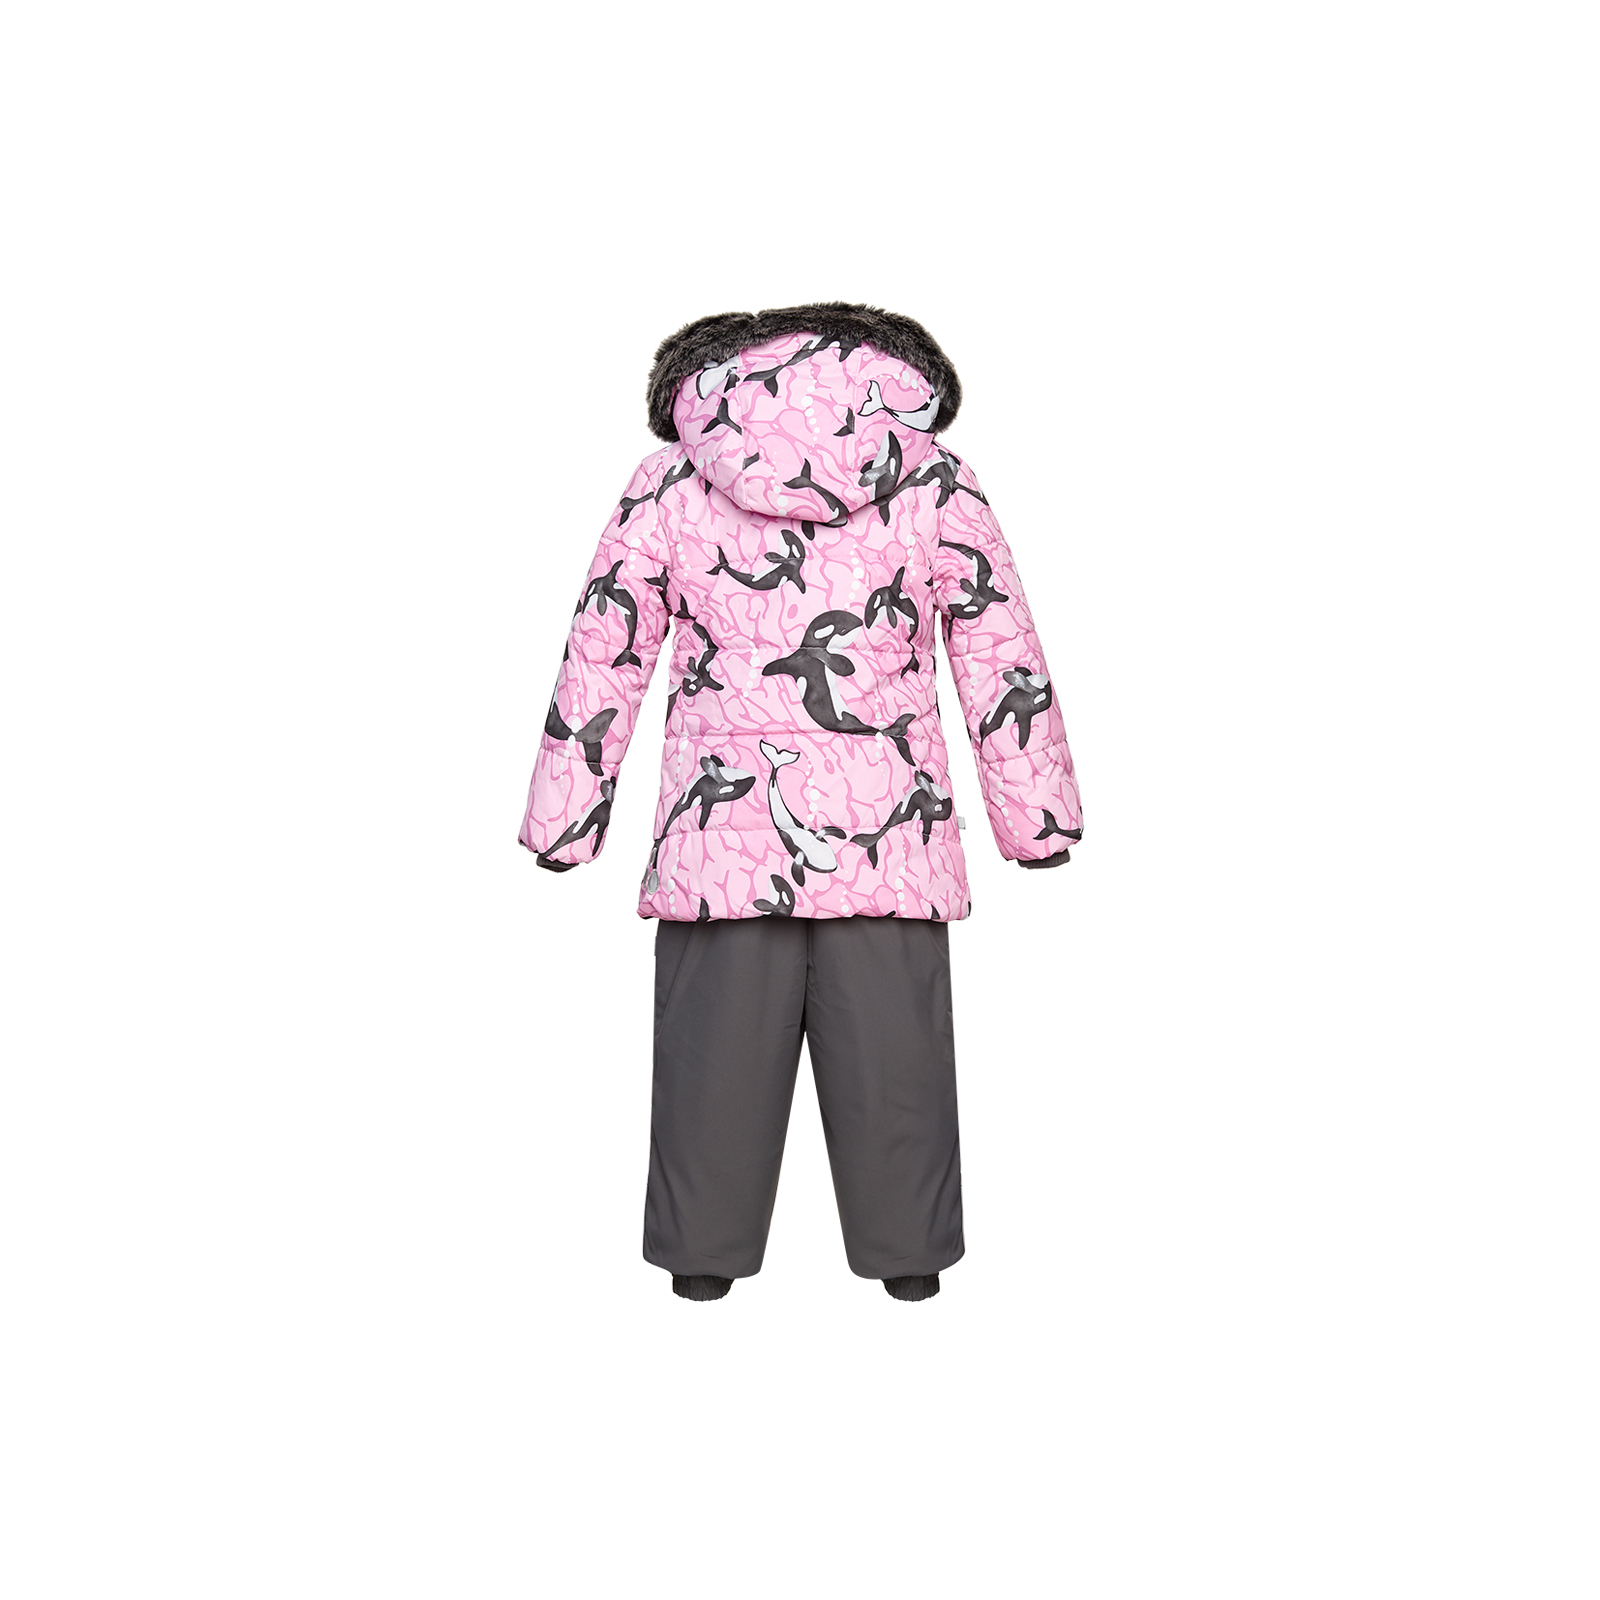 Комплект верхней одежды Huppa BELINDA 1 45090130 cветло-розовый с принтом/серый 92 (4741468977355) изображение 2